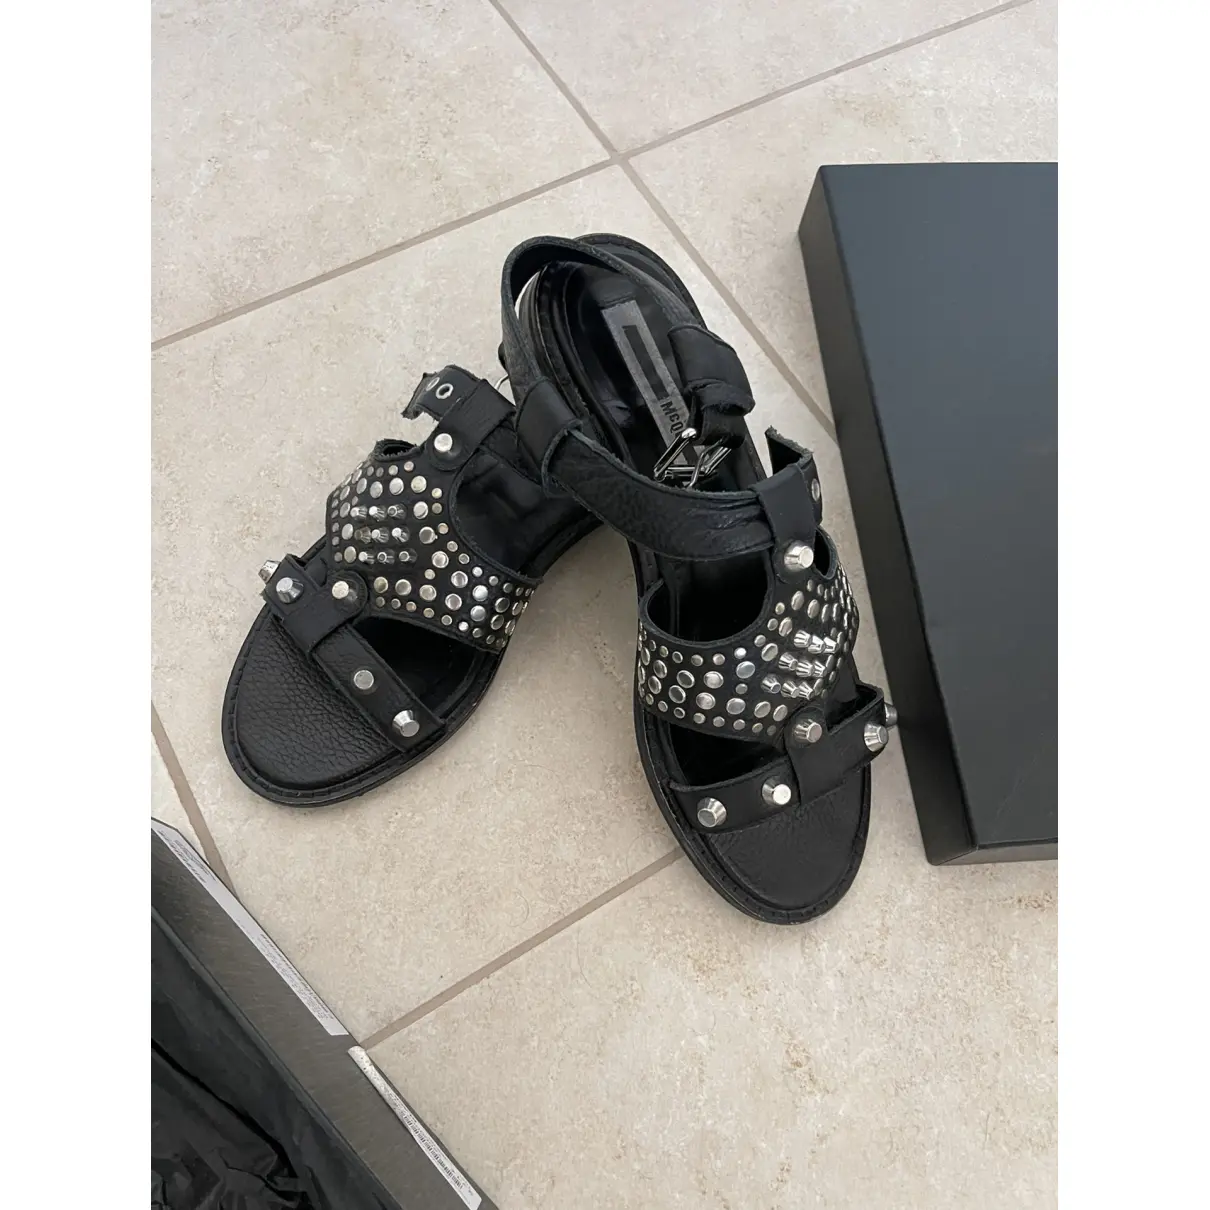 Luxury Mcq Sandals Women